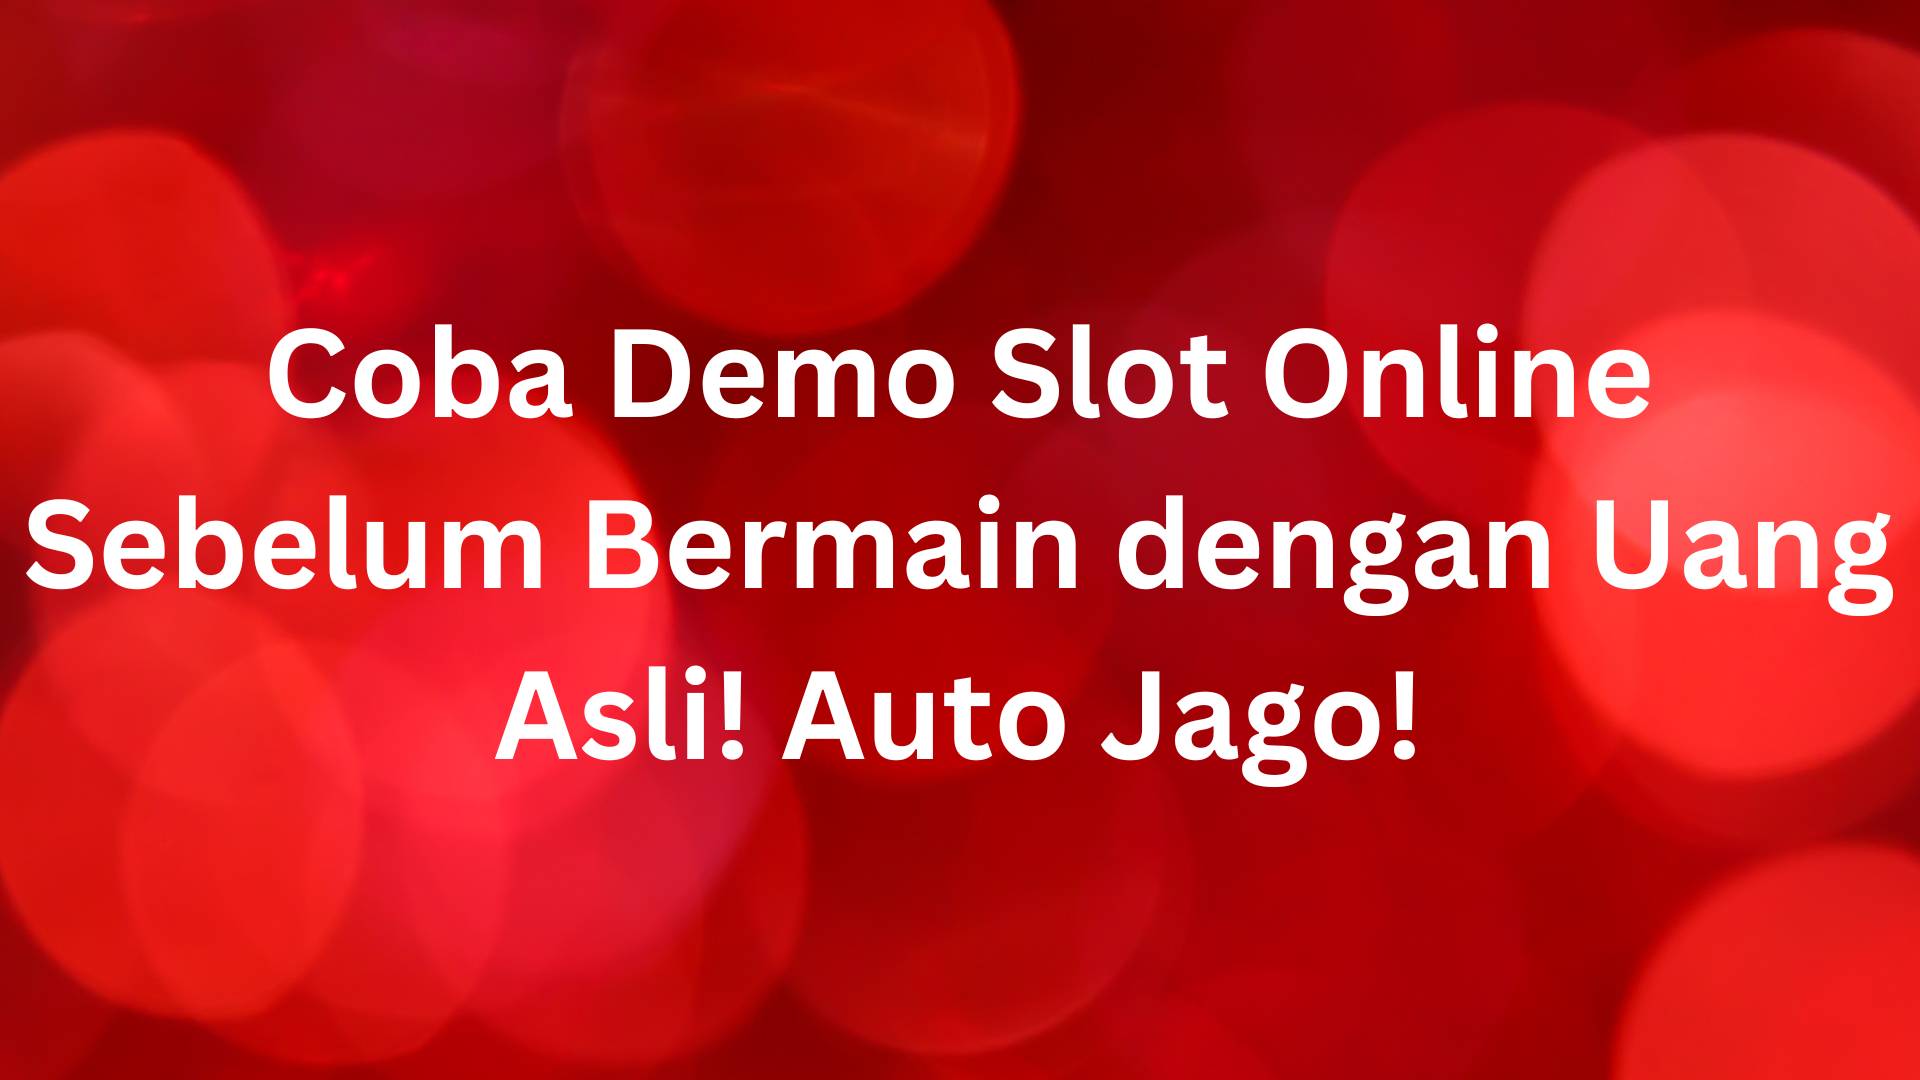  Coba Demo Slot Online Sebelum Bermain dengan Uang Asli! Auto Jago!